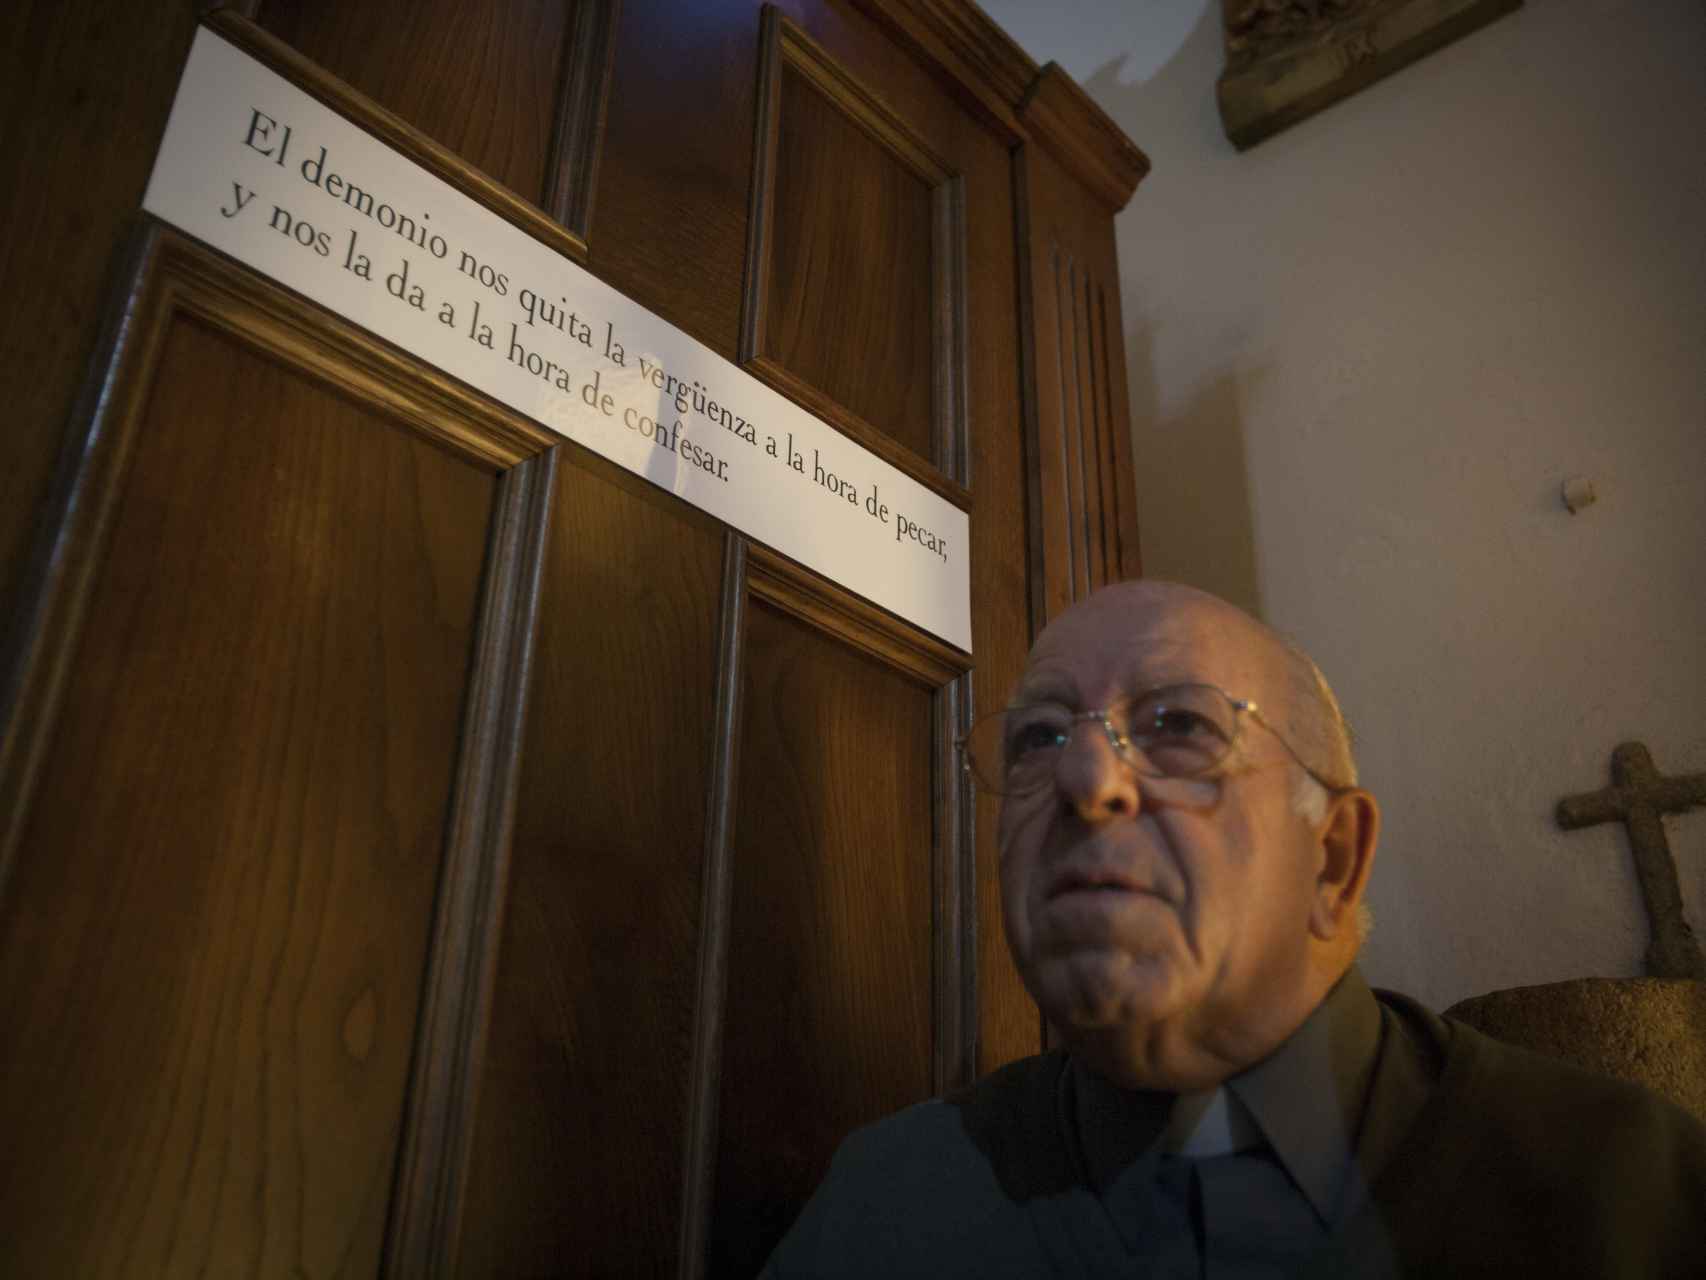 Portela, uno de los mayores exorcistas de España, dejará de ejercer como párroco.